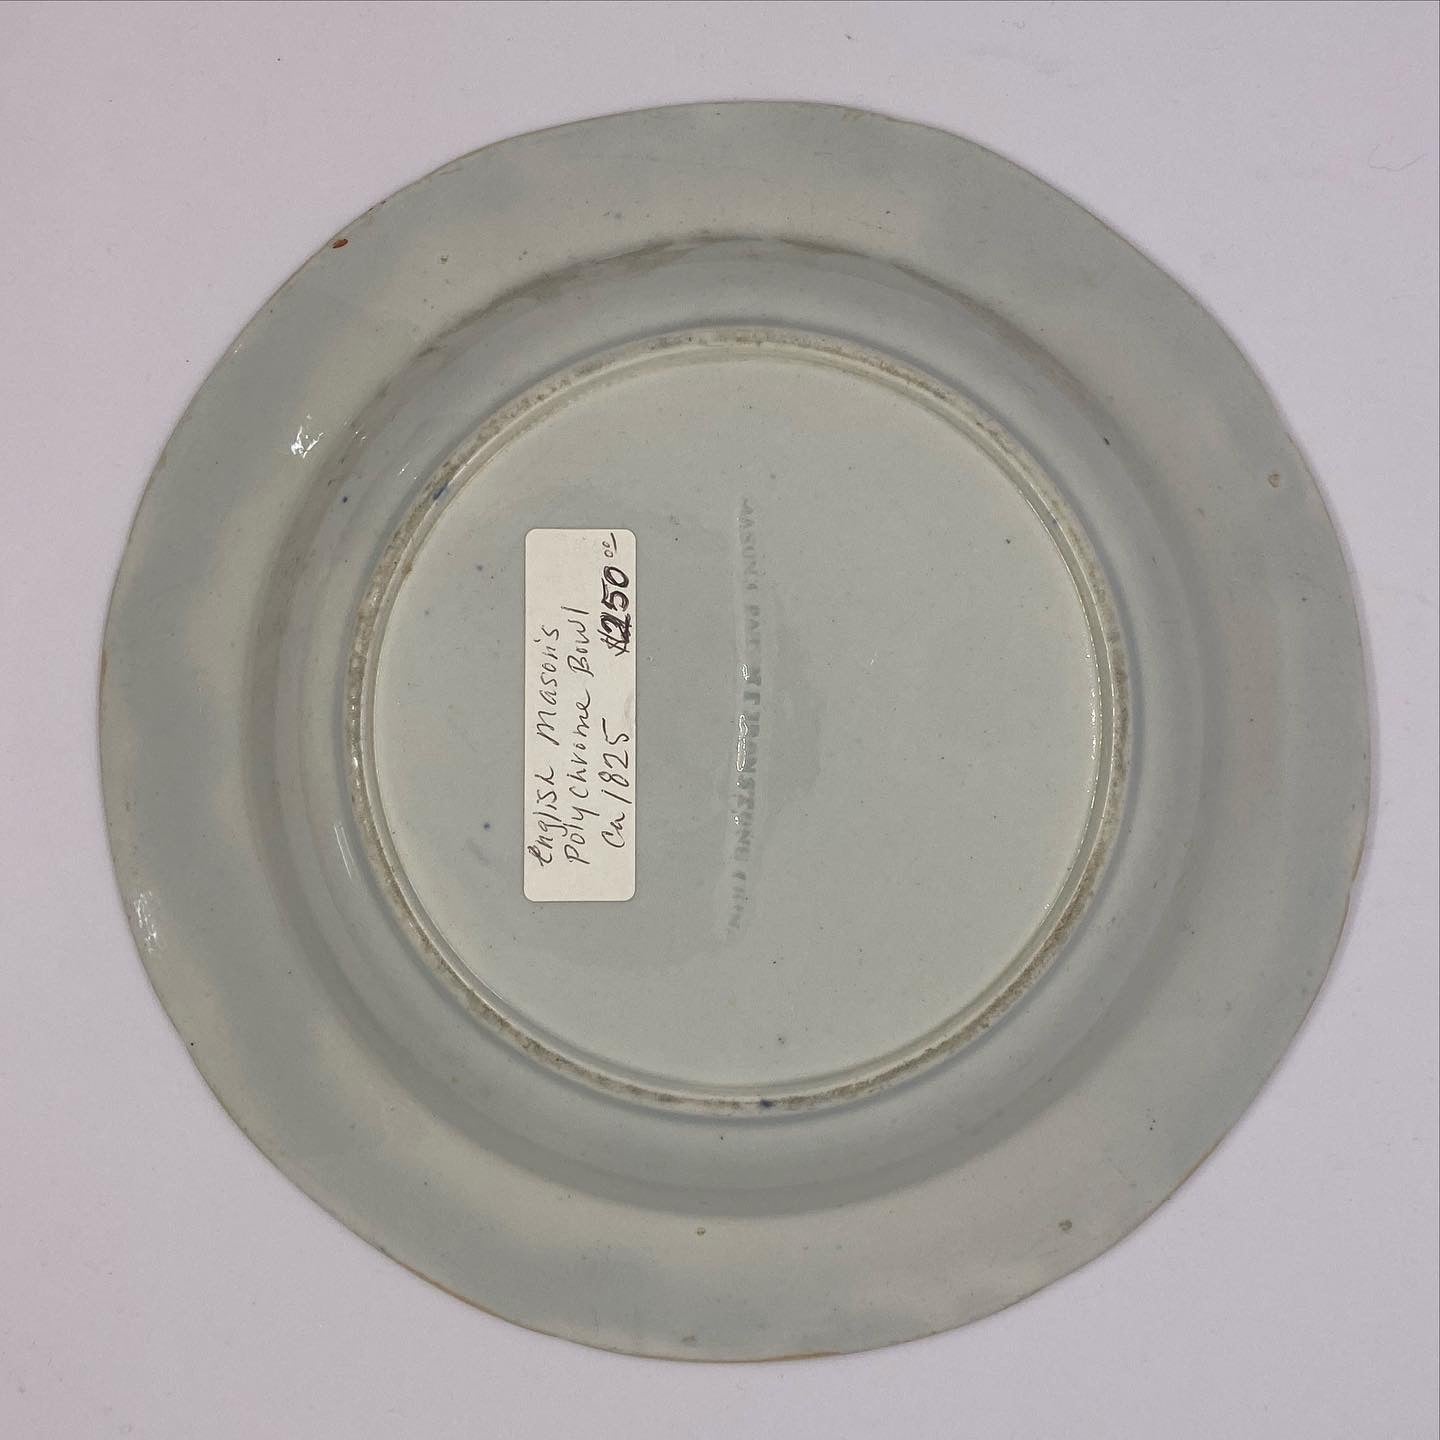 罕见的早期维多利亚梅森铁石彩绘碗，约 1825 年